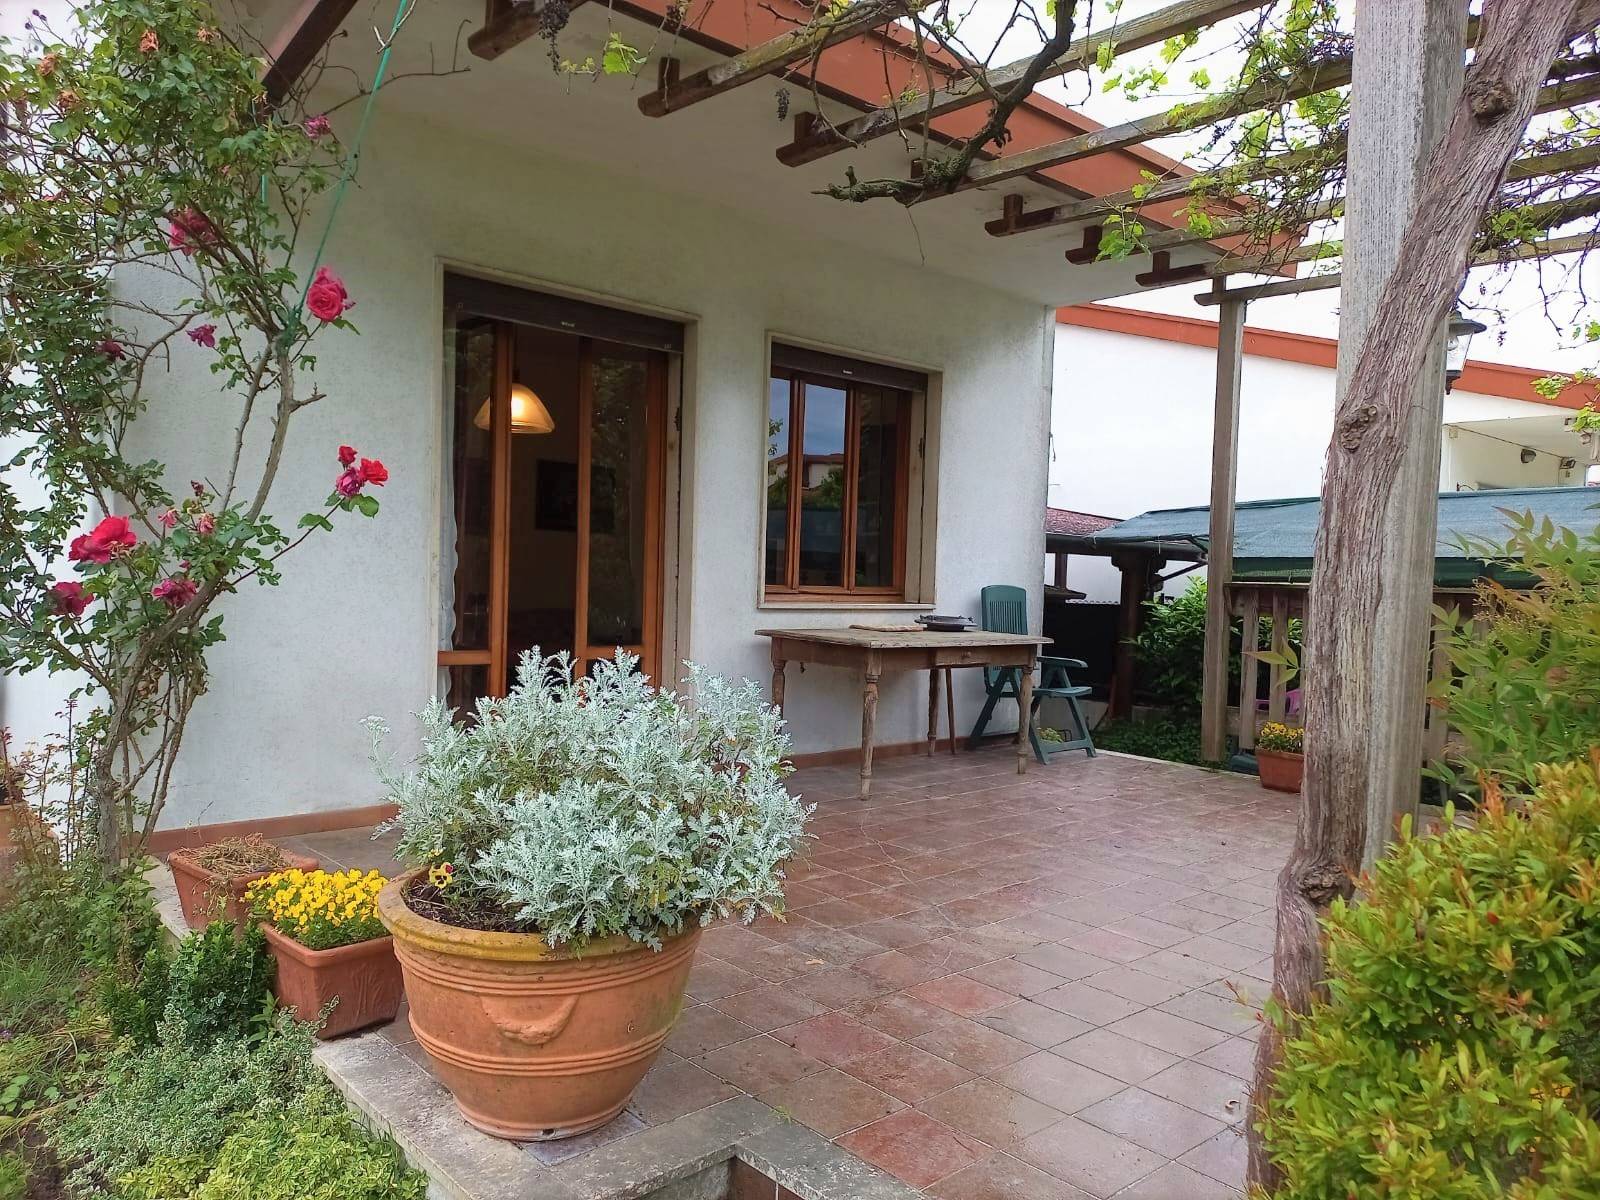 Villa Bifamiliare in vendita a Martellago, 8 locali, prezzo € 268.000 | PortaleAgenzieImmobiliari.it